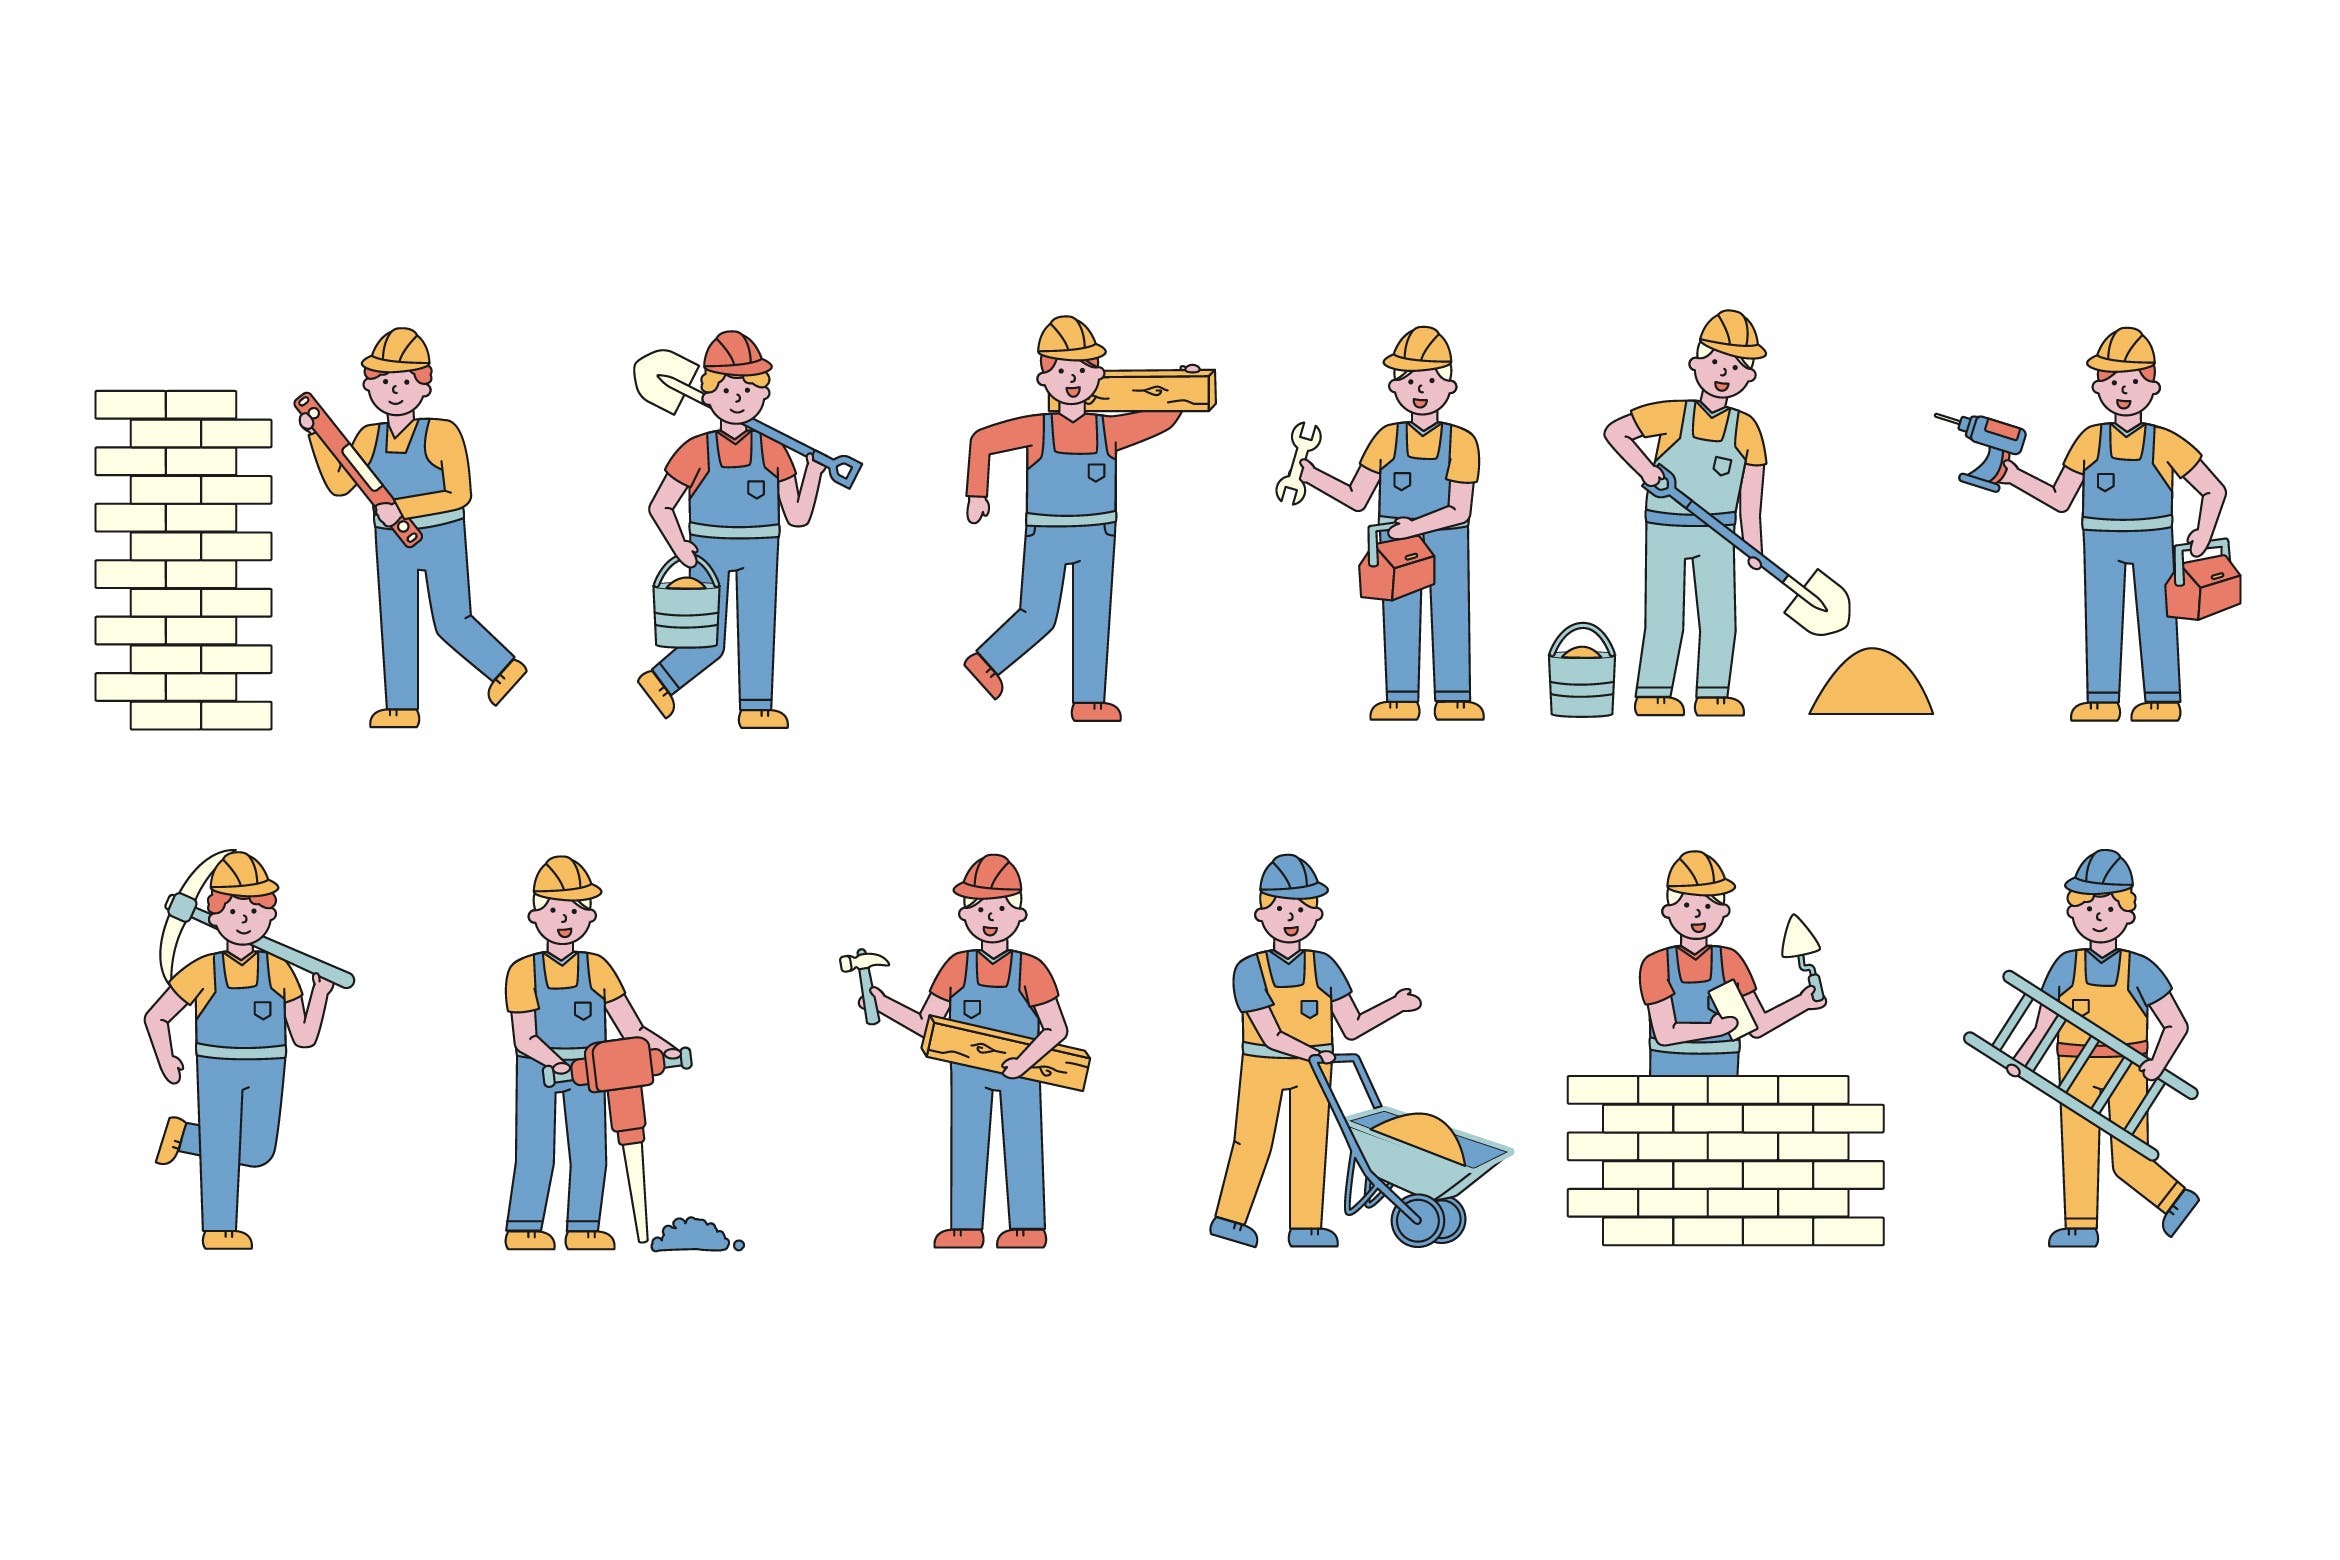 建筑工人人物形象线条艺术矢量插画大洋岛精选素材 Builders Lineart People Character Collection插图